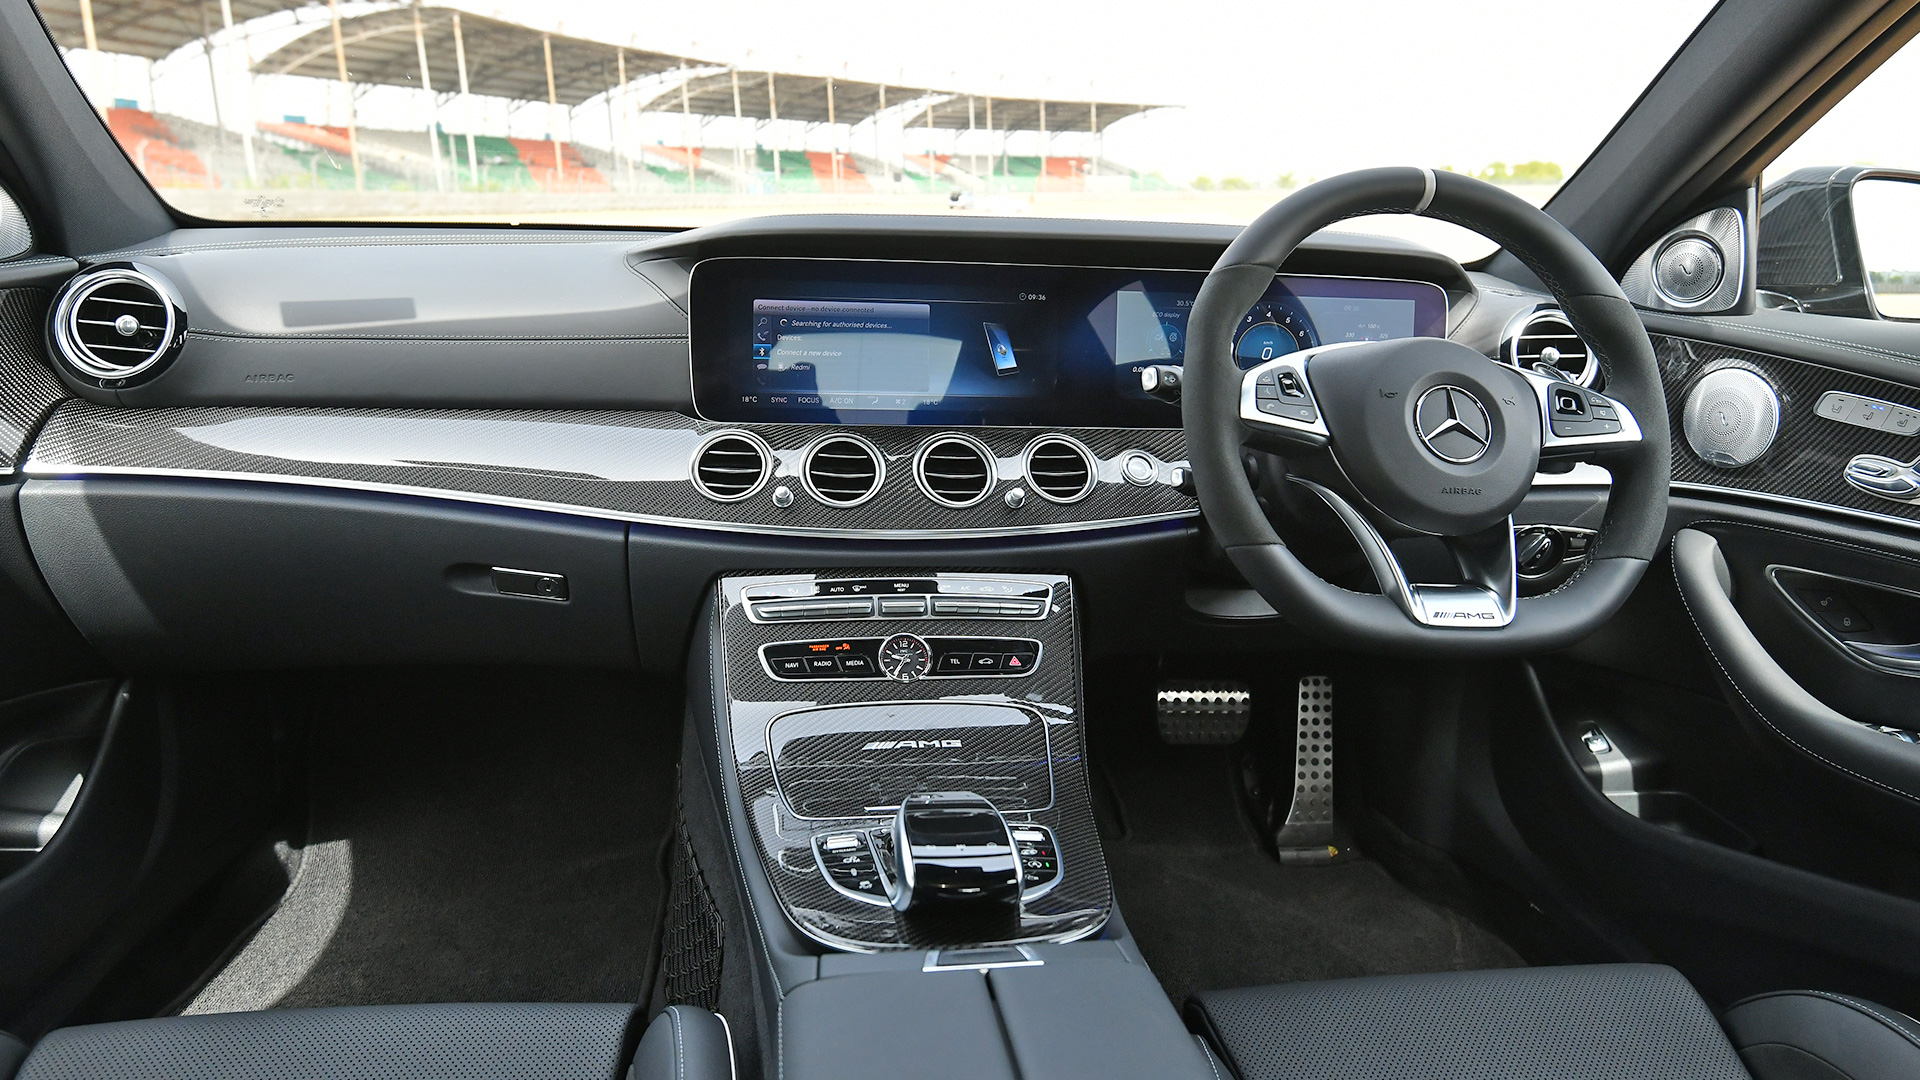 Mercedes Benz E63 Amg 2018 S Interior Car Photos Overdrive